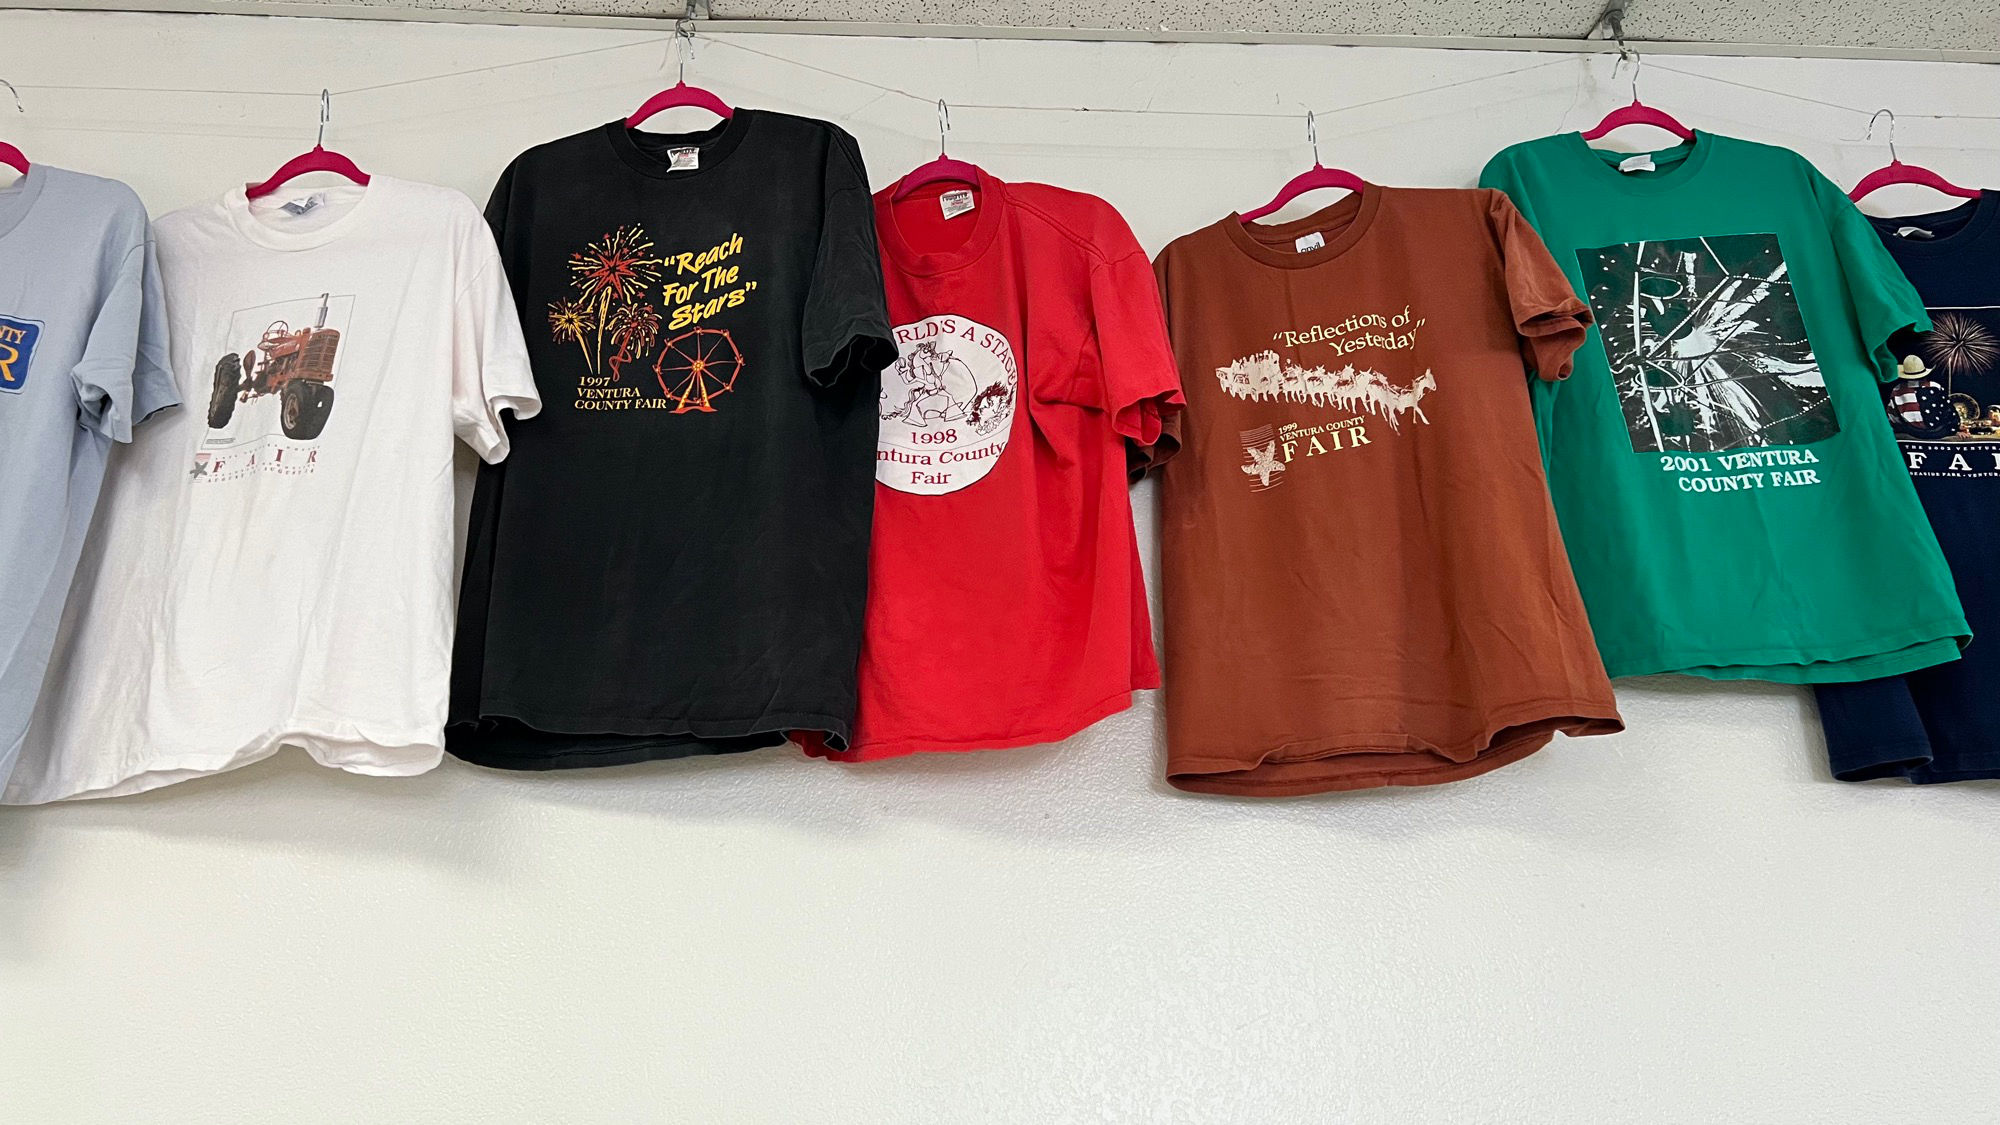 Ventura County Fair T-Shirts 1996 - 2001